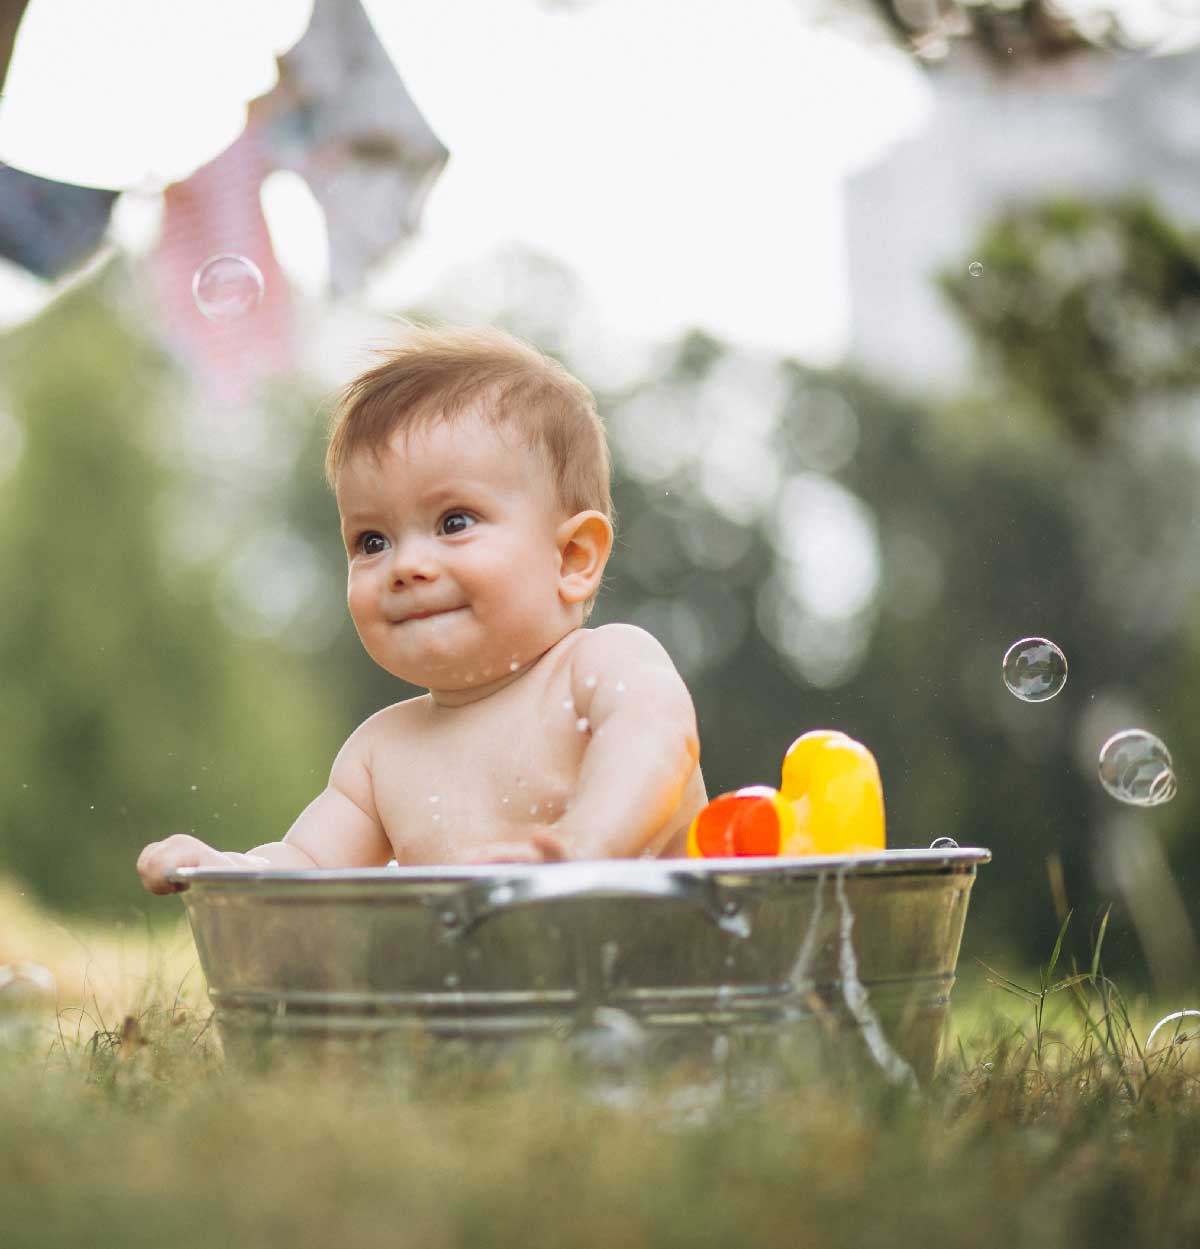 Vaschette per il bagnetto del neonato: quale scegliere?